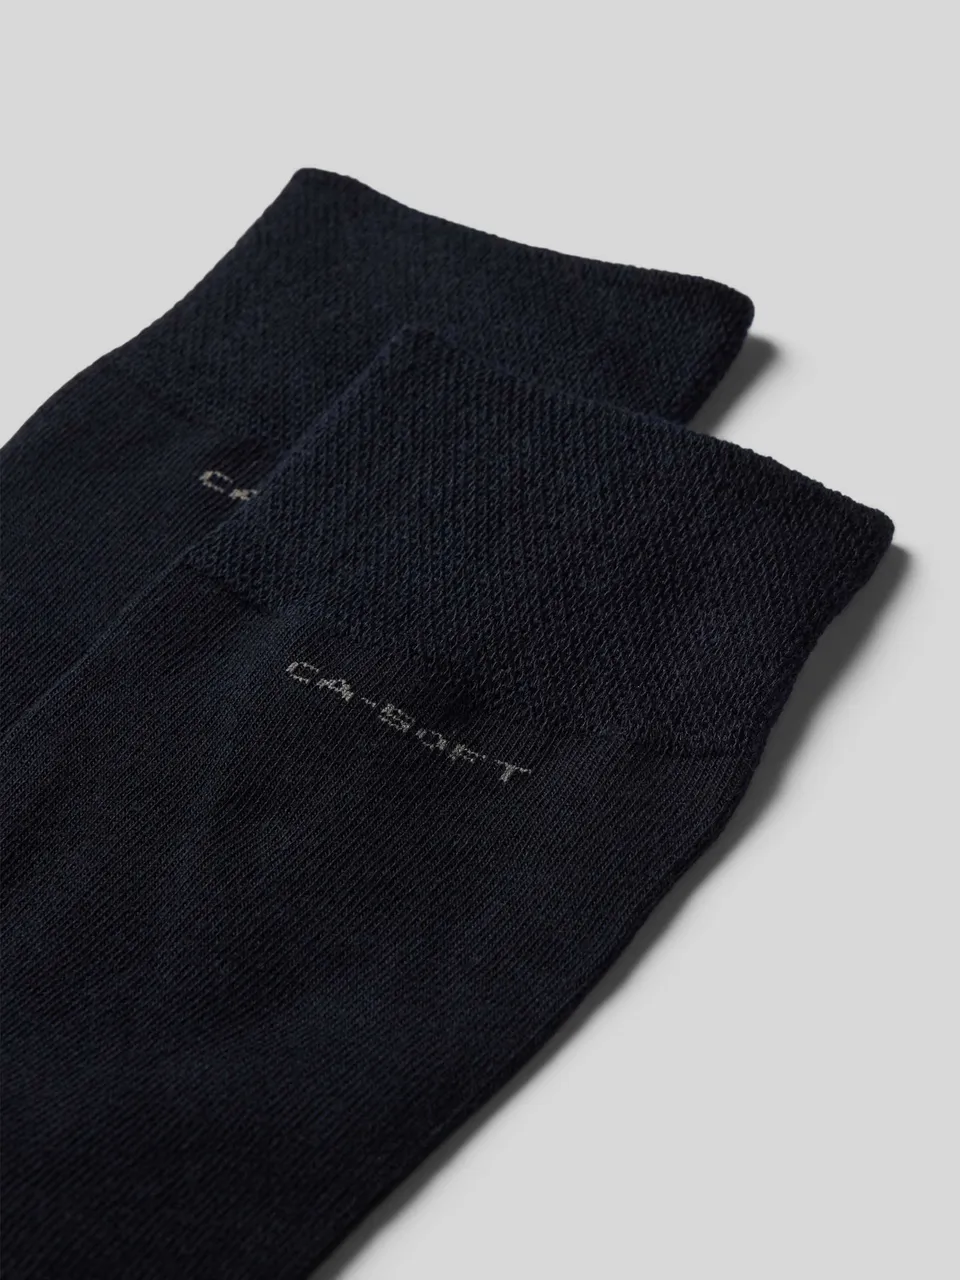 Socken im unifarbenen Design im 4er-Pack